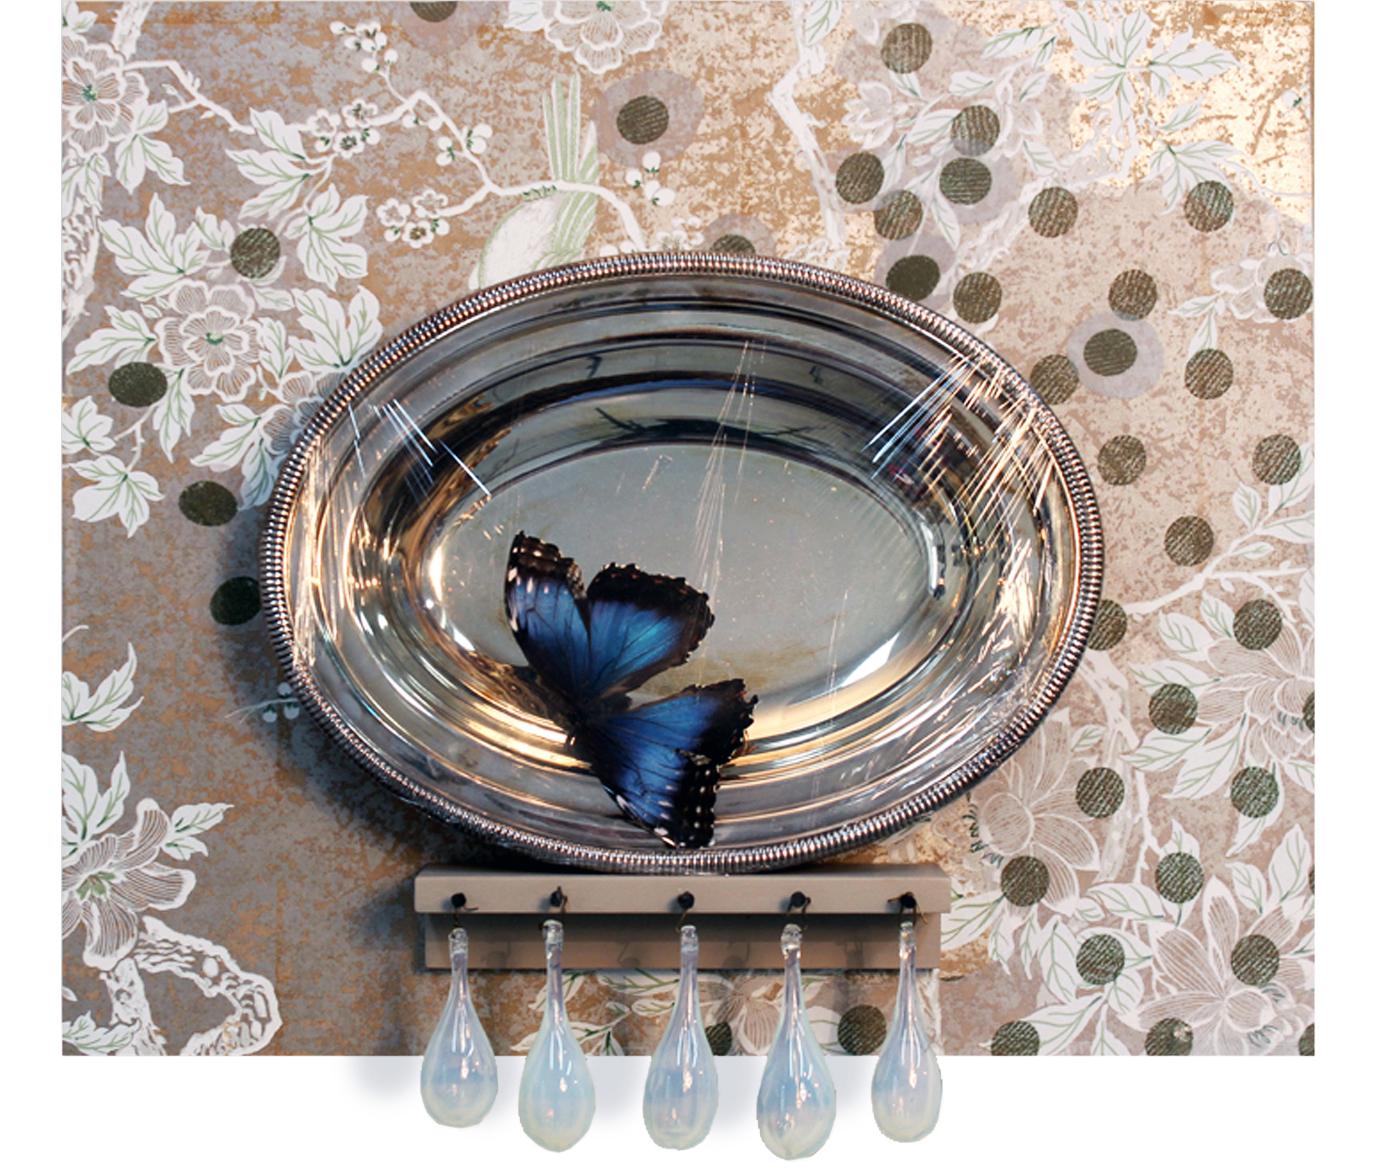 „Parlour“-Tapete, Glas, Silberblech, Schmetterling, Nägel, auf Karton montiert